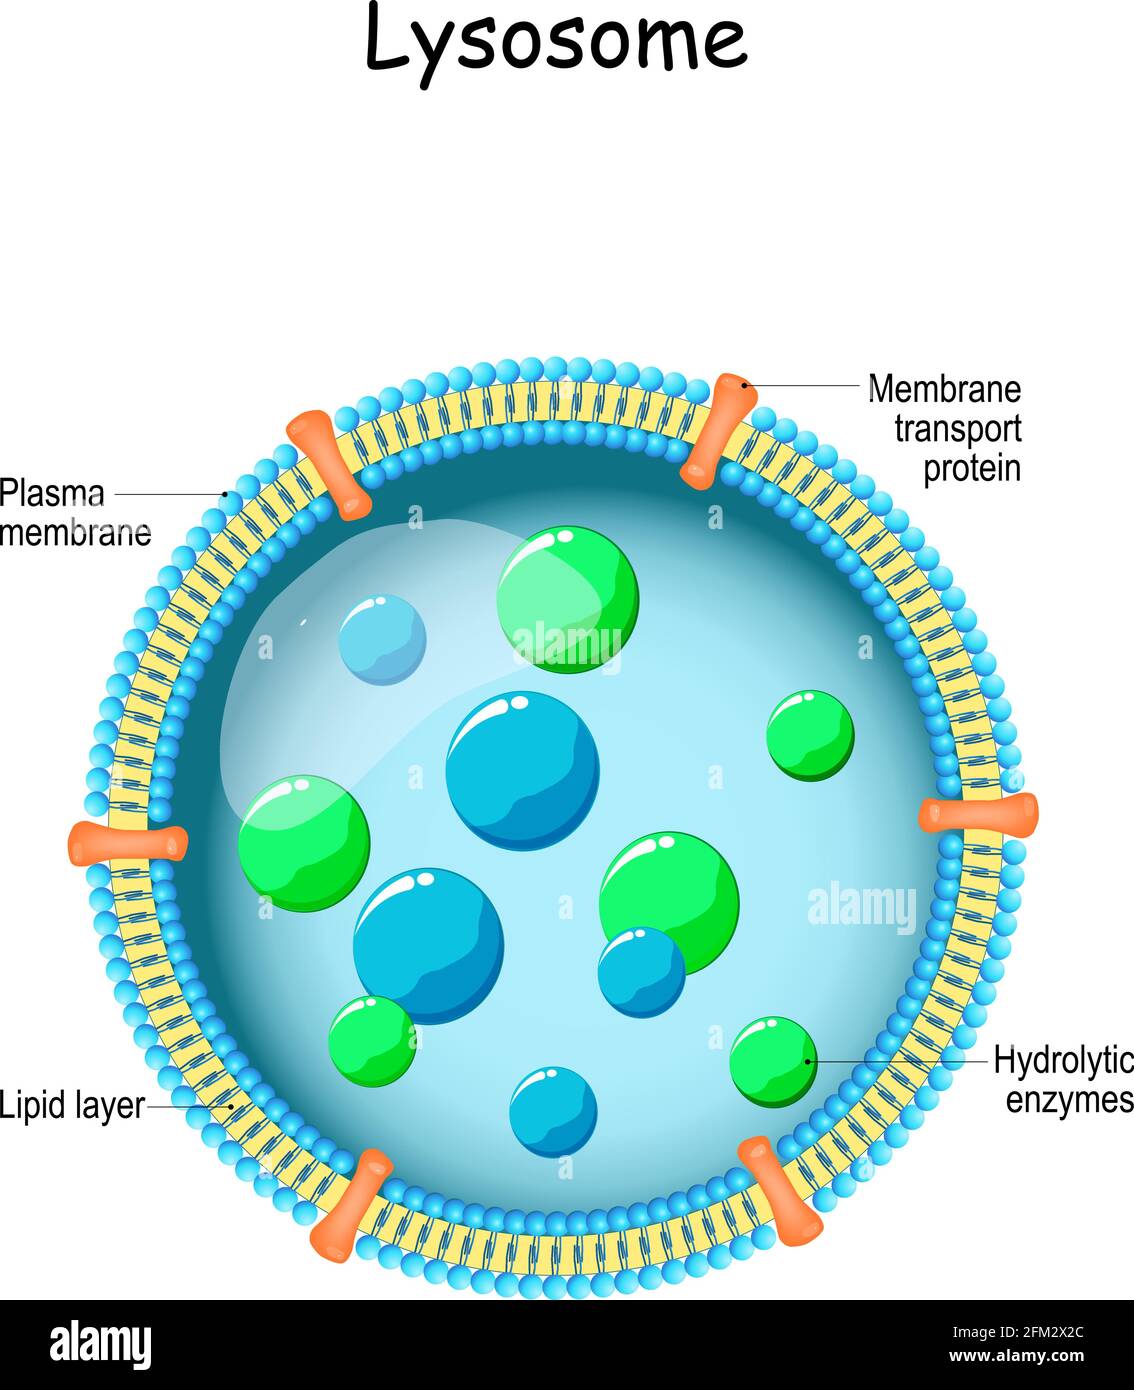 Lysosome. Anatomie du lysosome : enzymes hydrolytiques, protéines membranaires et de transport. Organelle utilise les enzymes pour décomposer et digérer les aliments Illustration de Vecteur